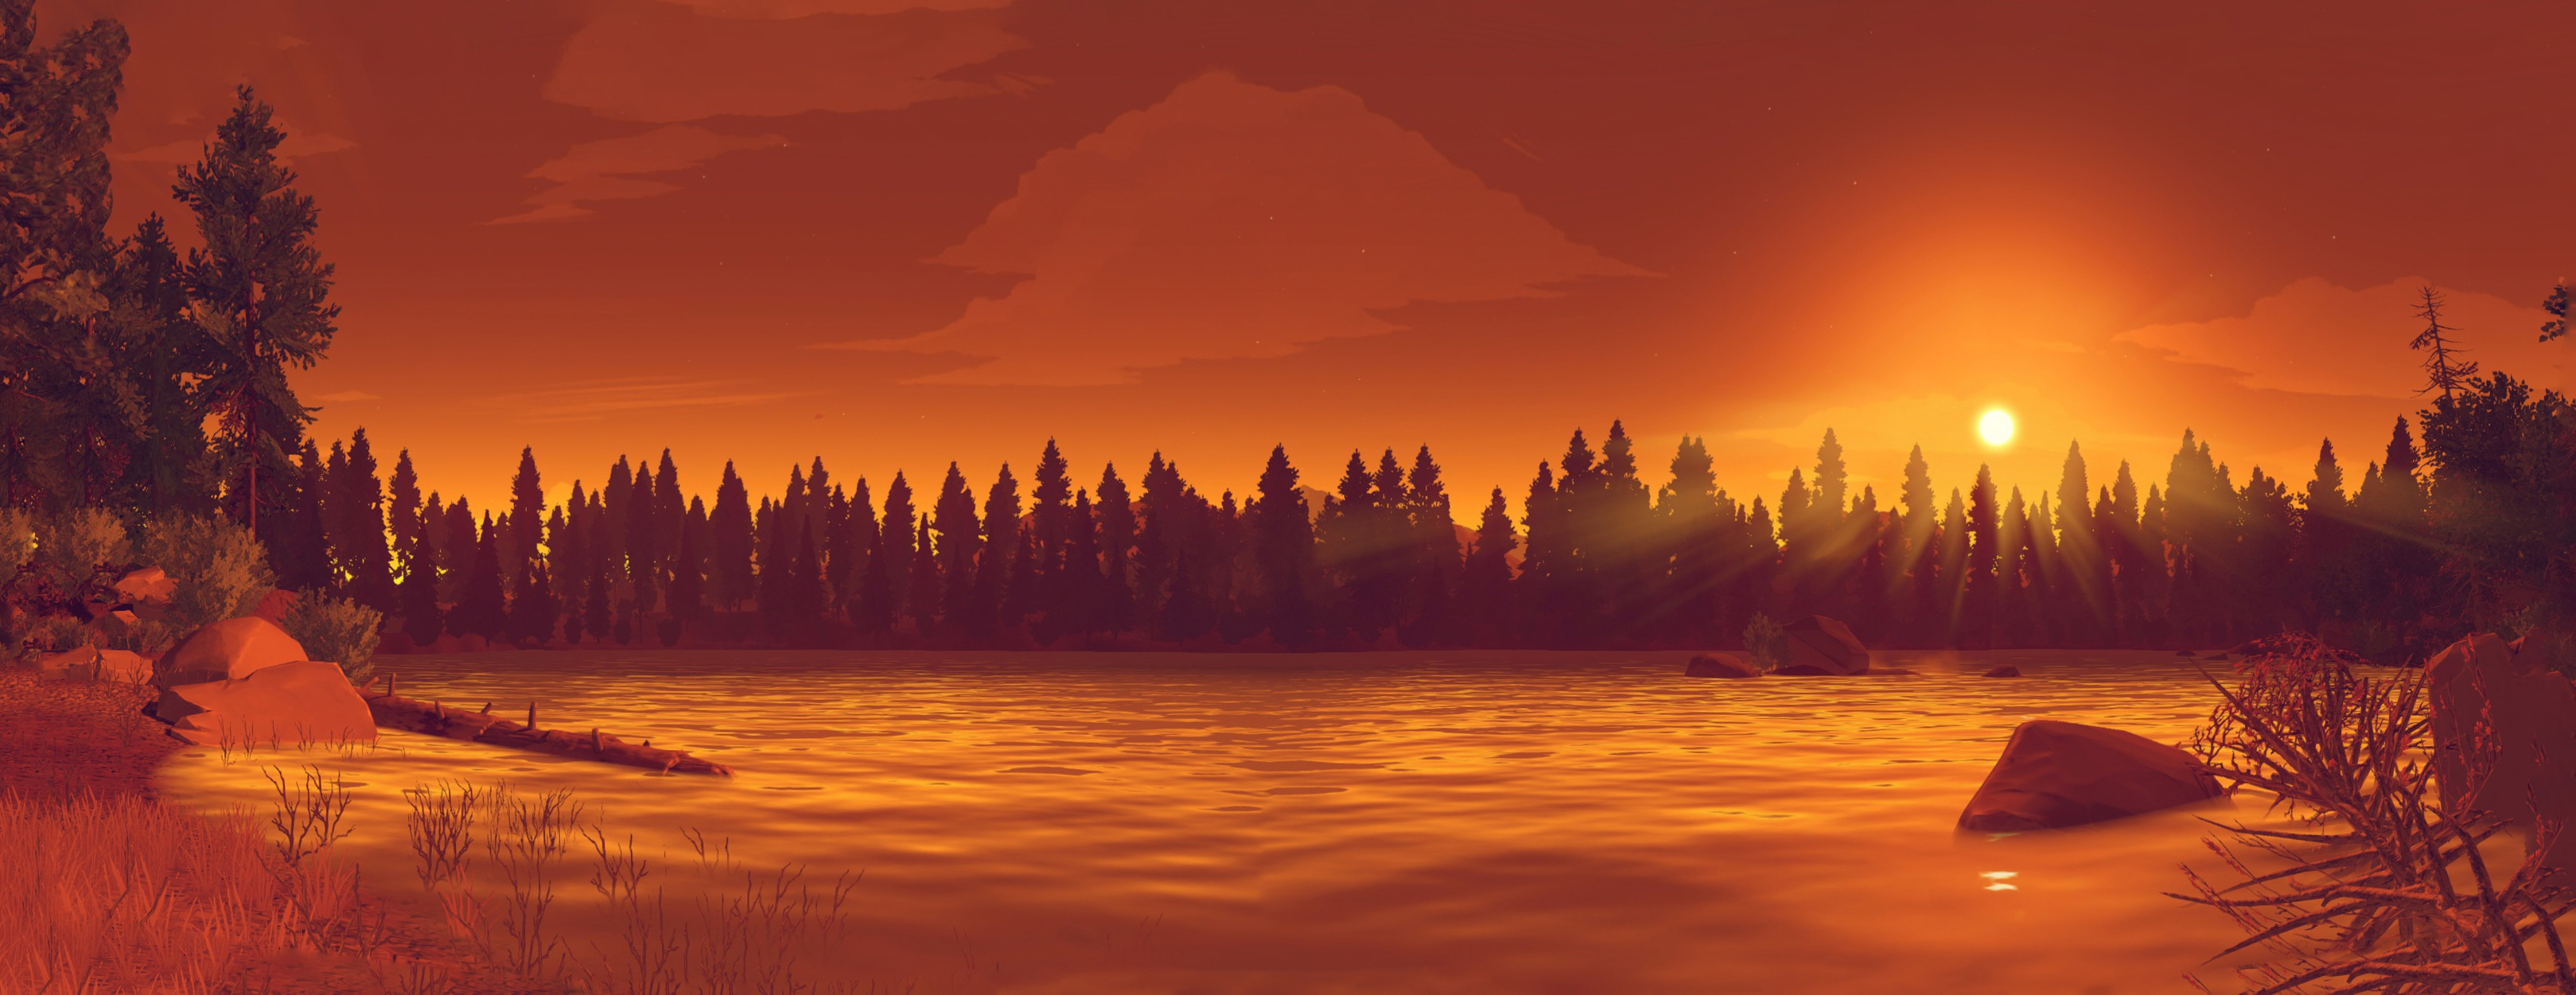 firewatch hd wallpaper,cielo,natura,cielo rosso al mattino,paesaggio naturale,alba